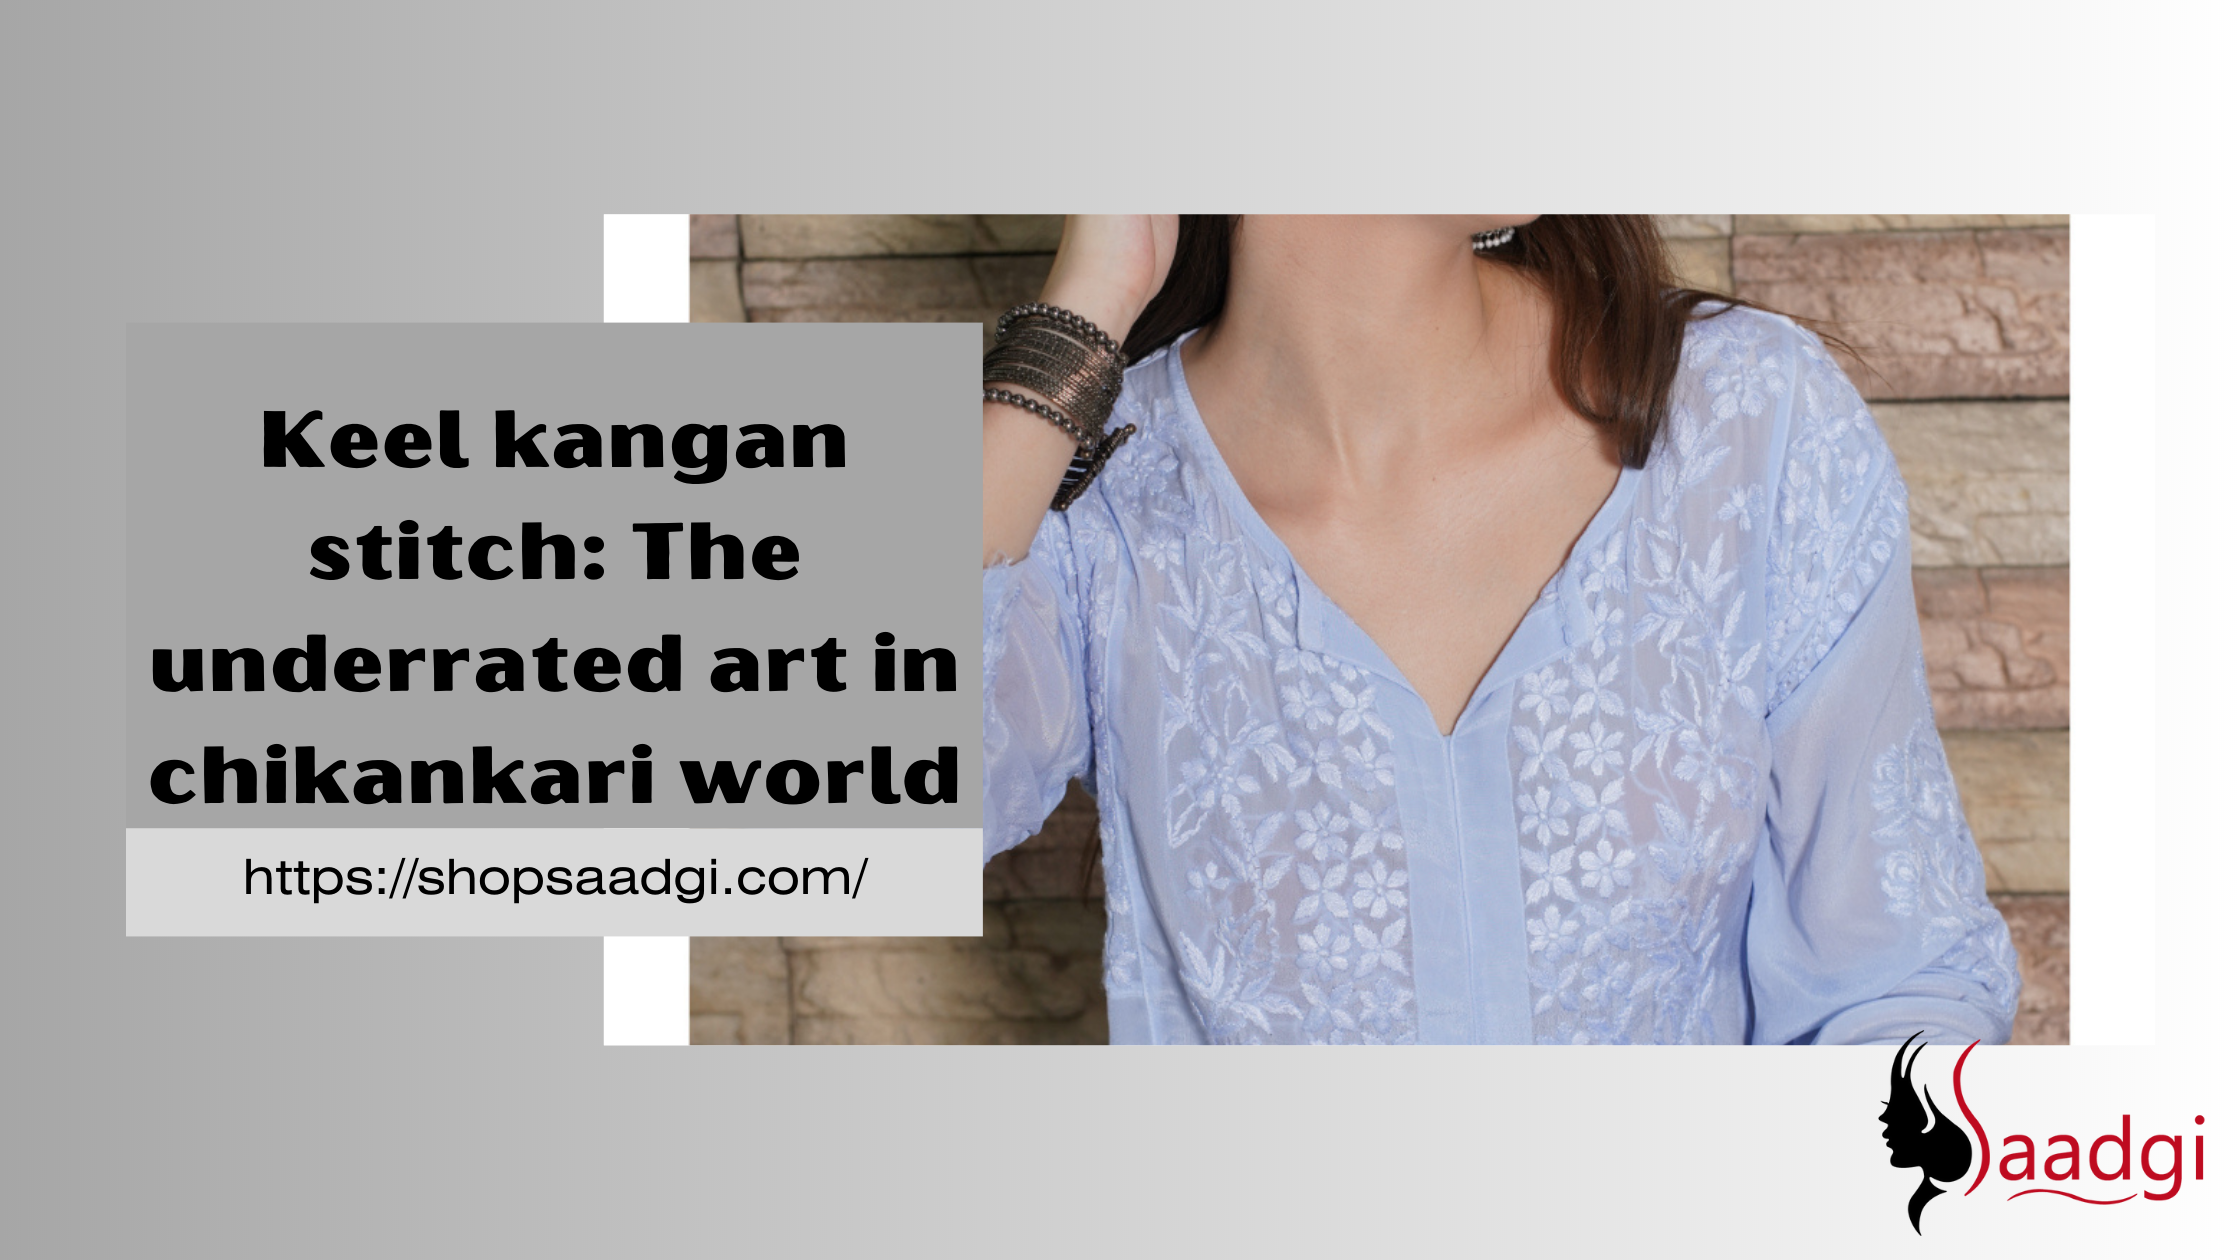 Keel kangan stitch The underrated art in chikankari world by saadgi